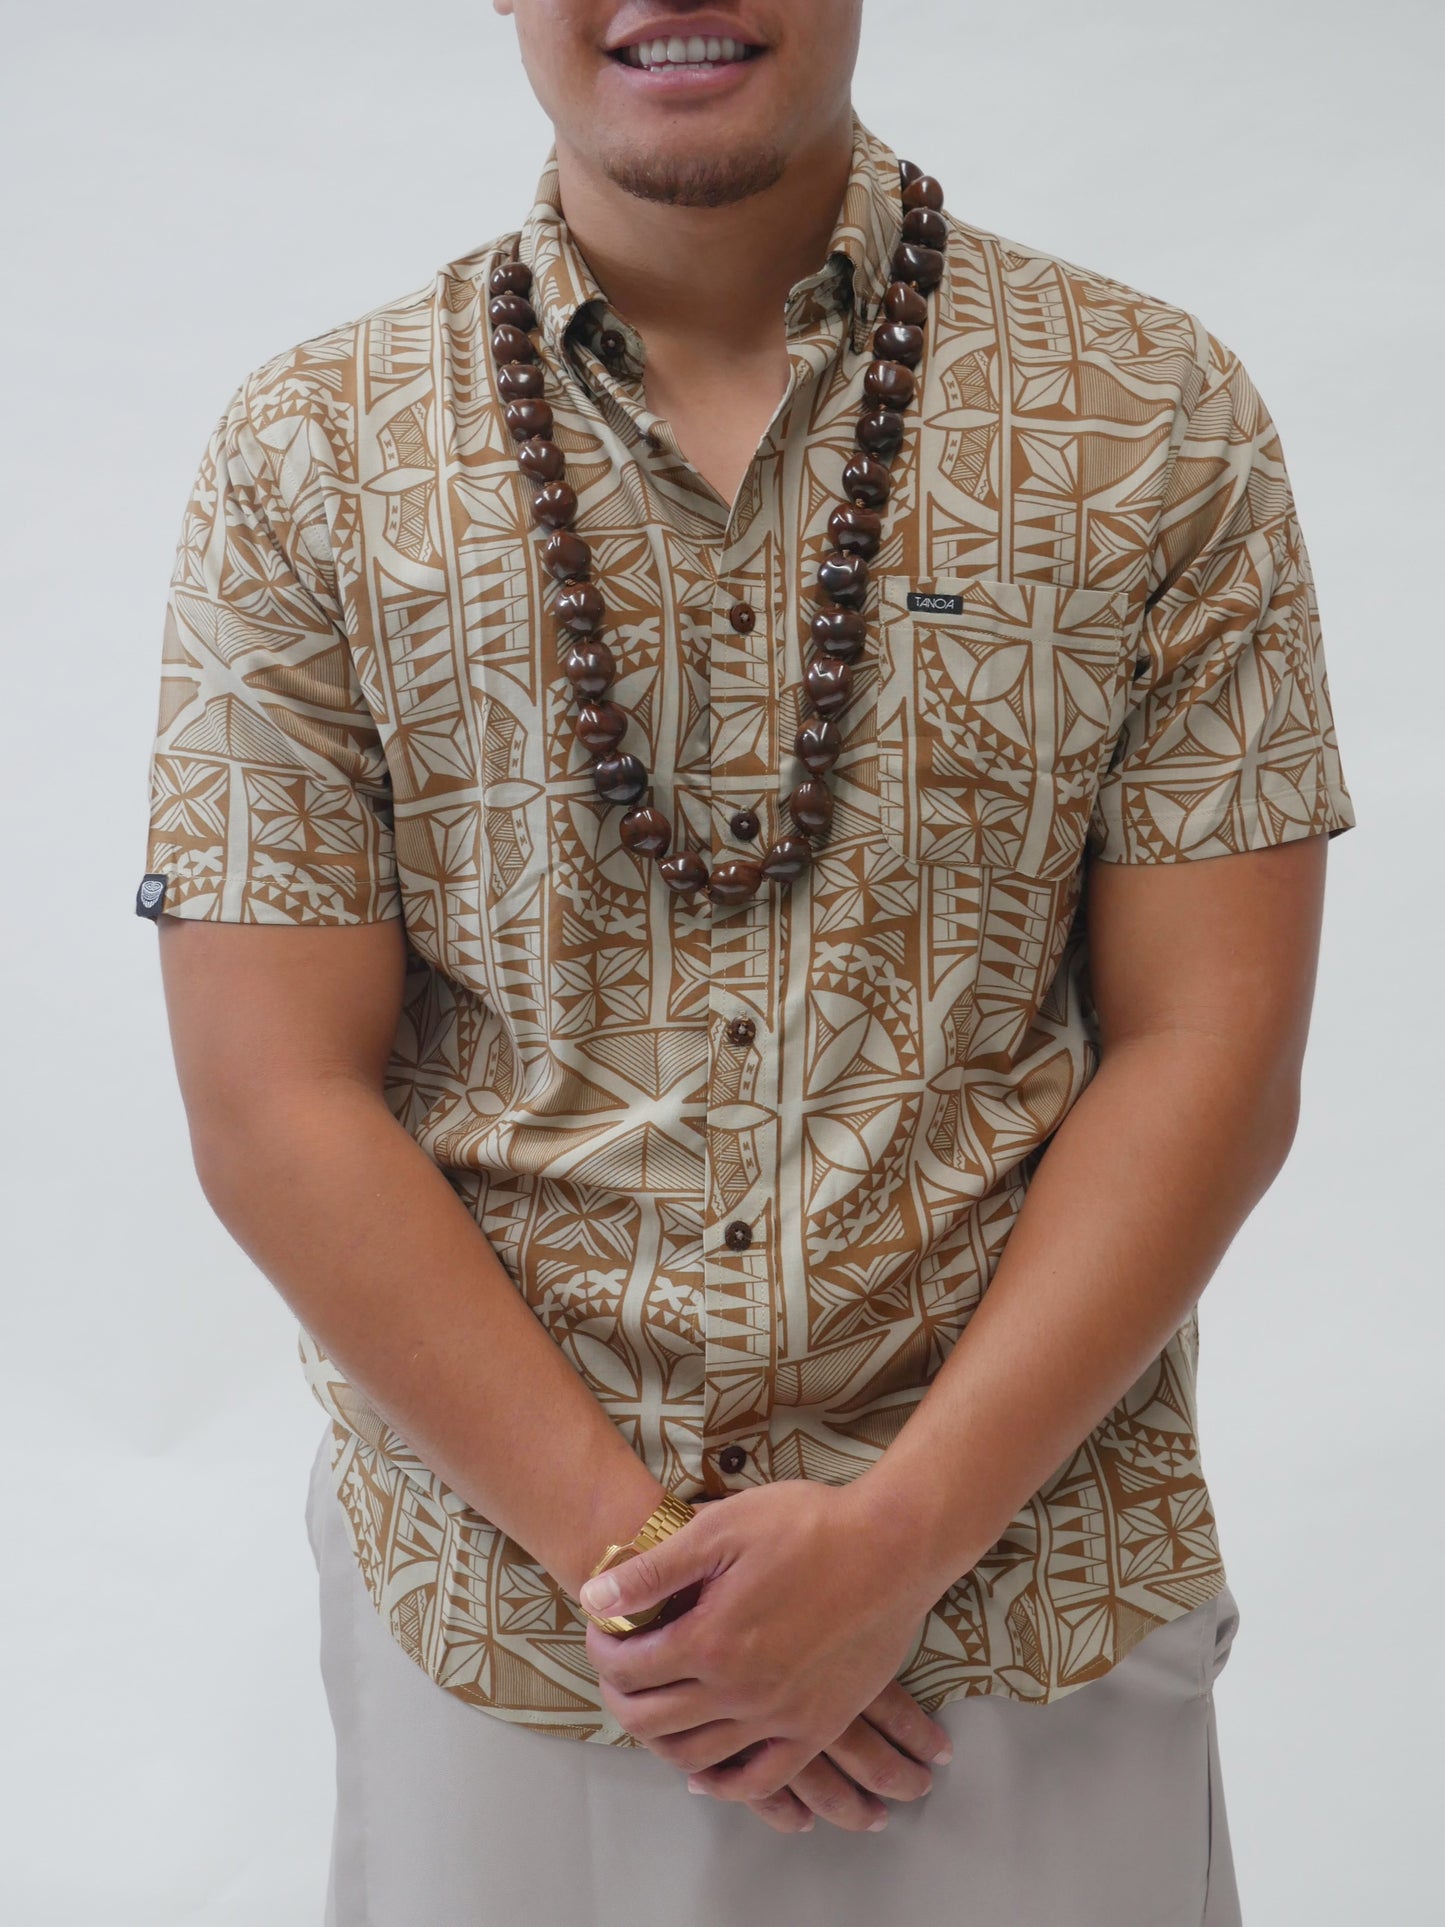 Tanoa Samoa Lemele Men’s Rayon Shirt